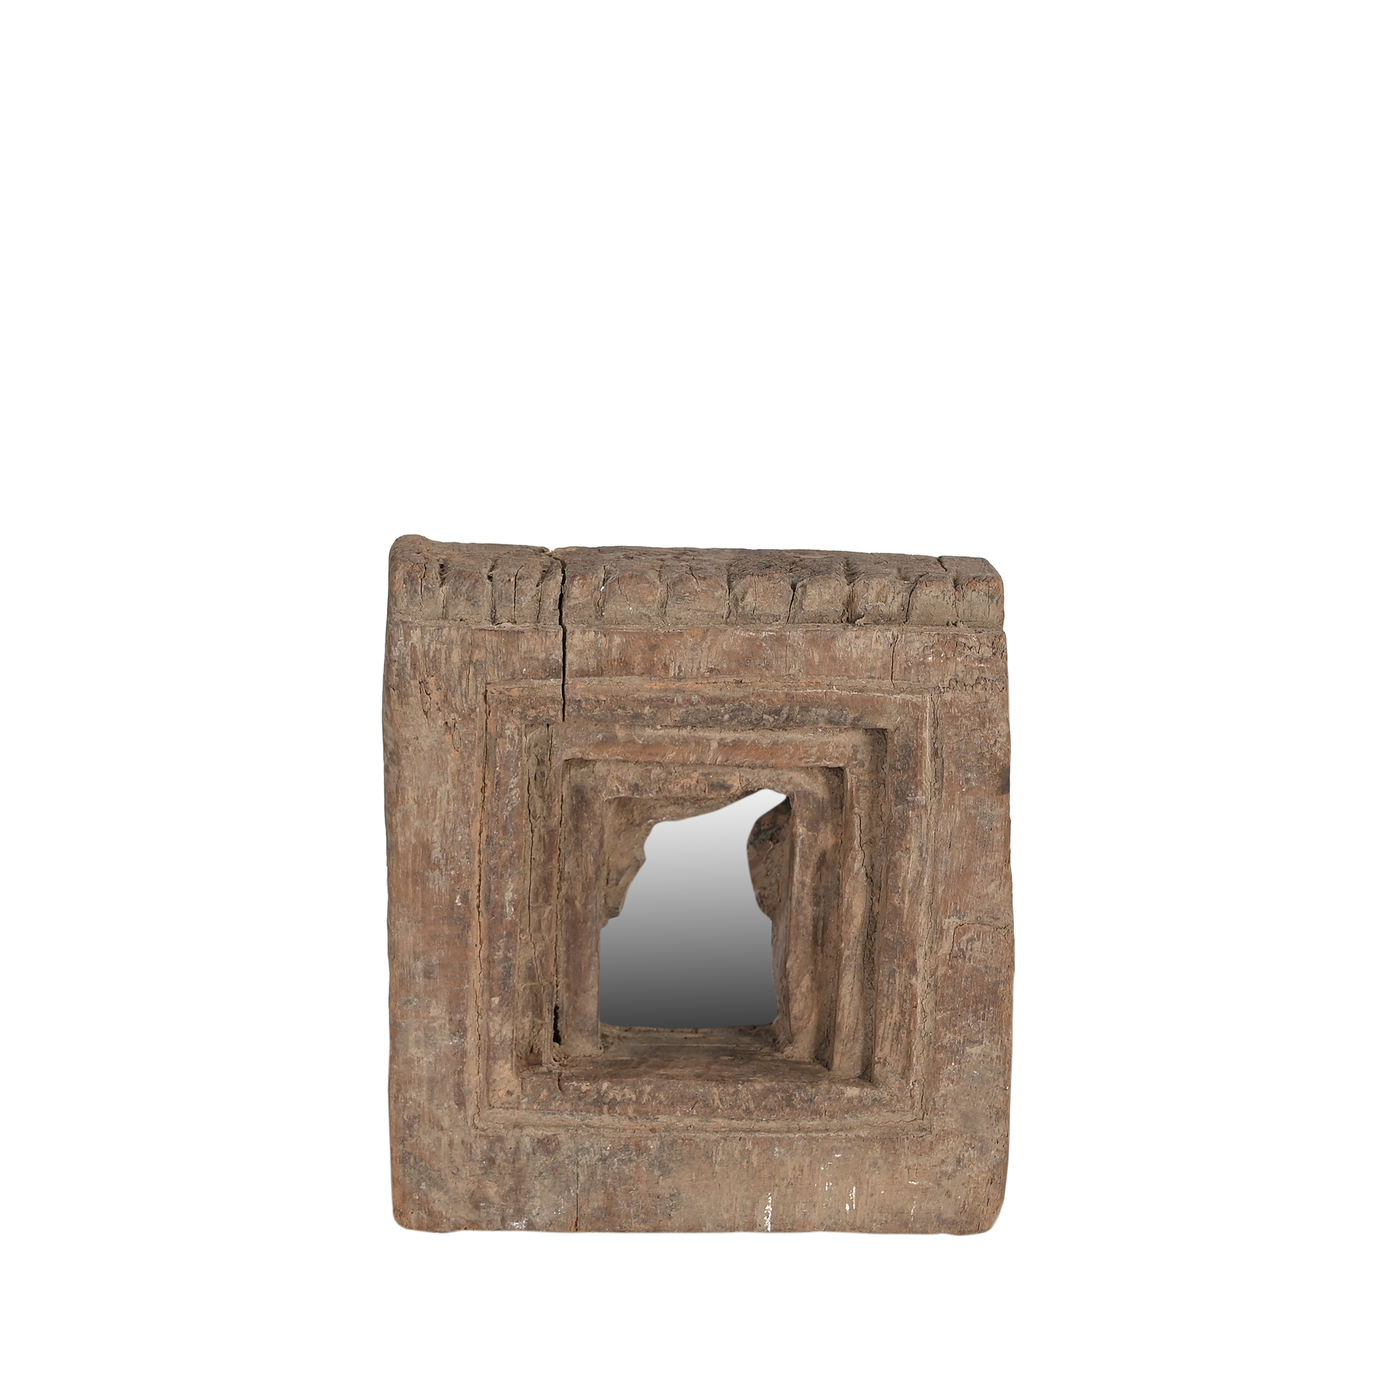 Mandir - Temple mirror n°32